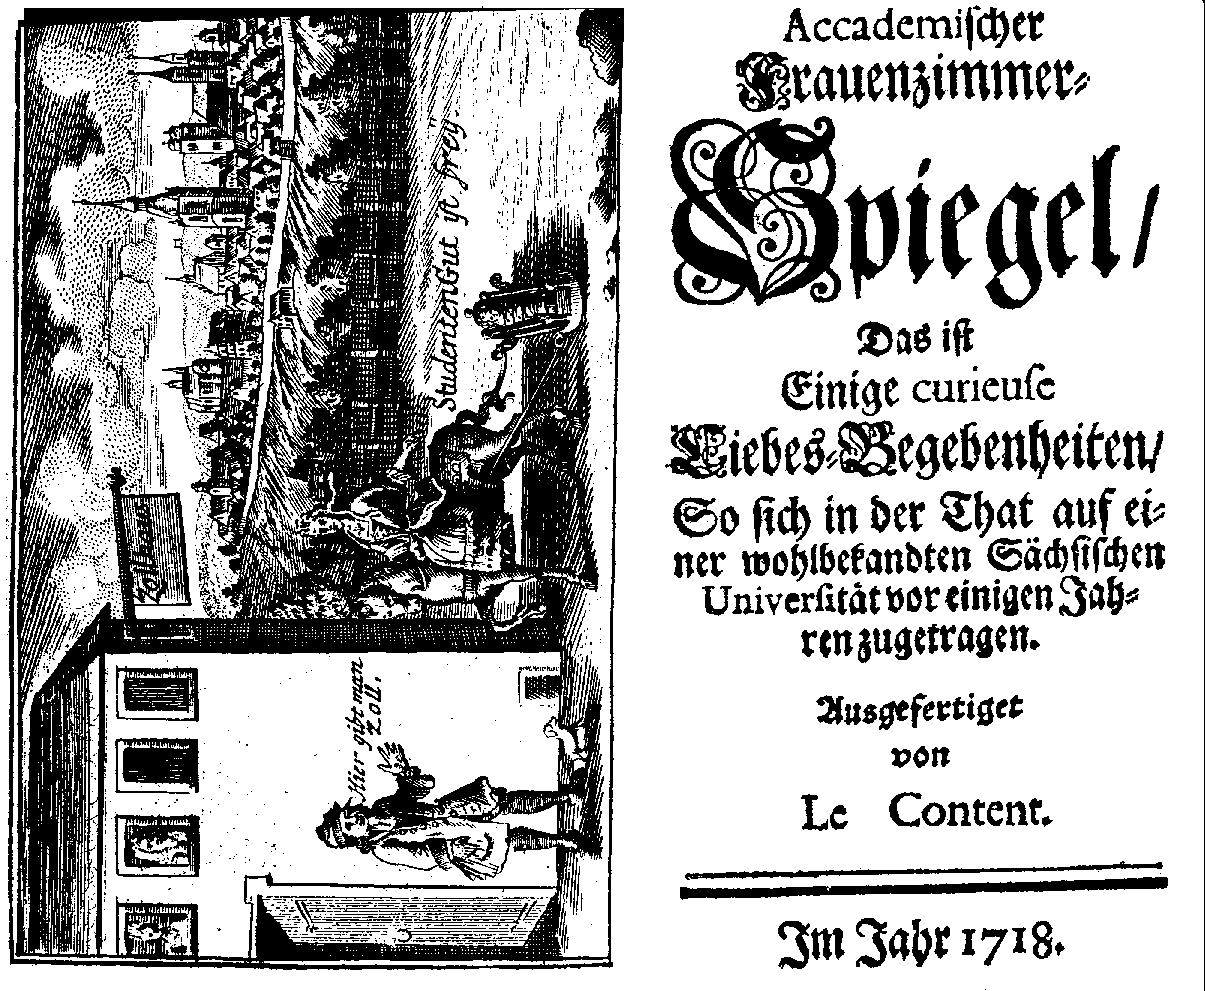 Le Content [pseud.], Accademischer Frauenzimmer-Spiegel (1718).